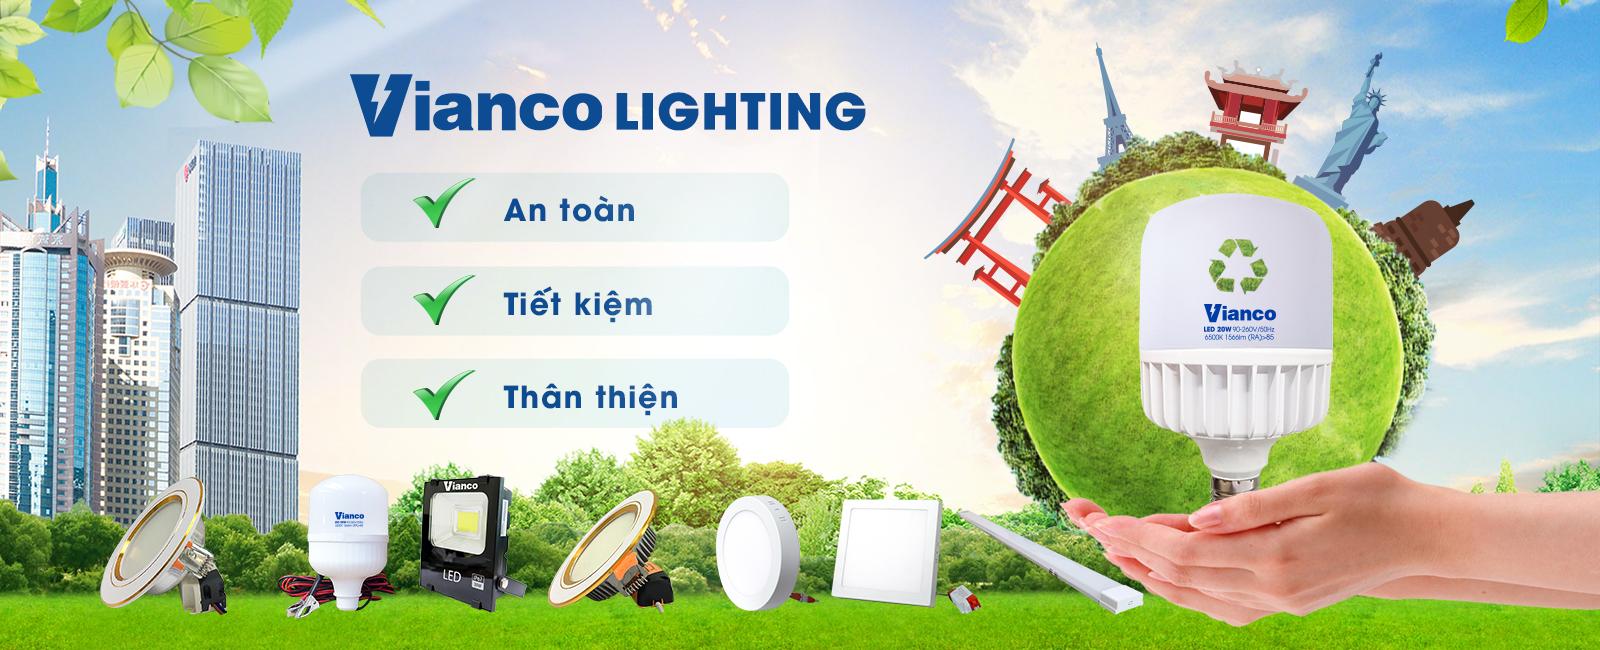 Đơn vị cung cấp bóng đèn Việt Nam chất lượng? Vi-sao-nen-su-dung-cac-san-pham-bong-den-viet-nam-chat-luong-4